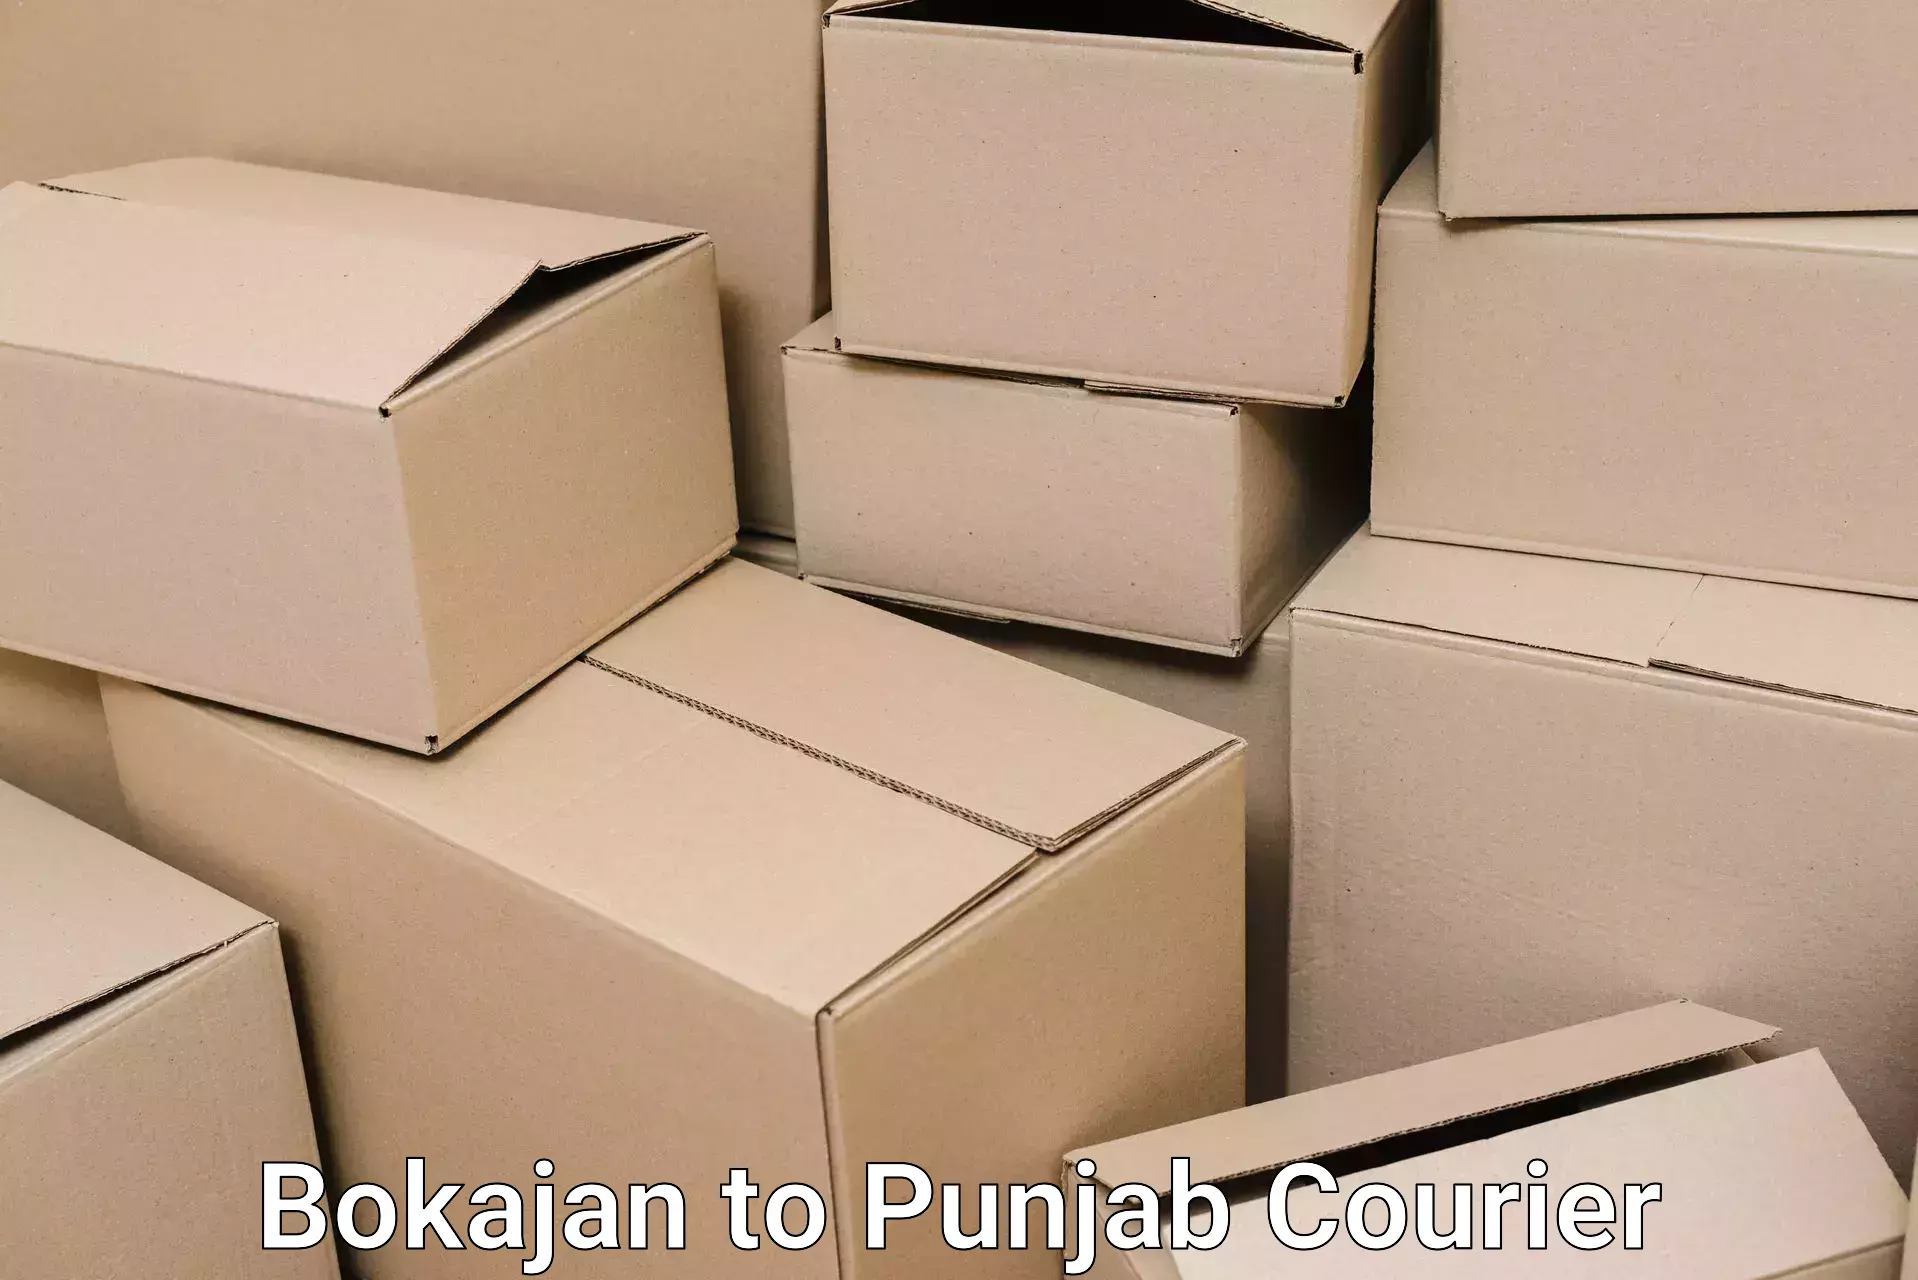 Nationwide moving services Bokajan to Punjab